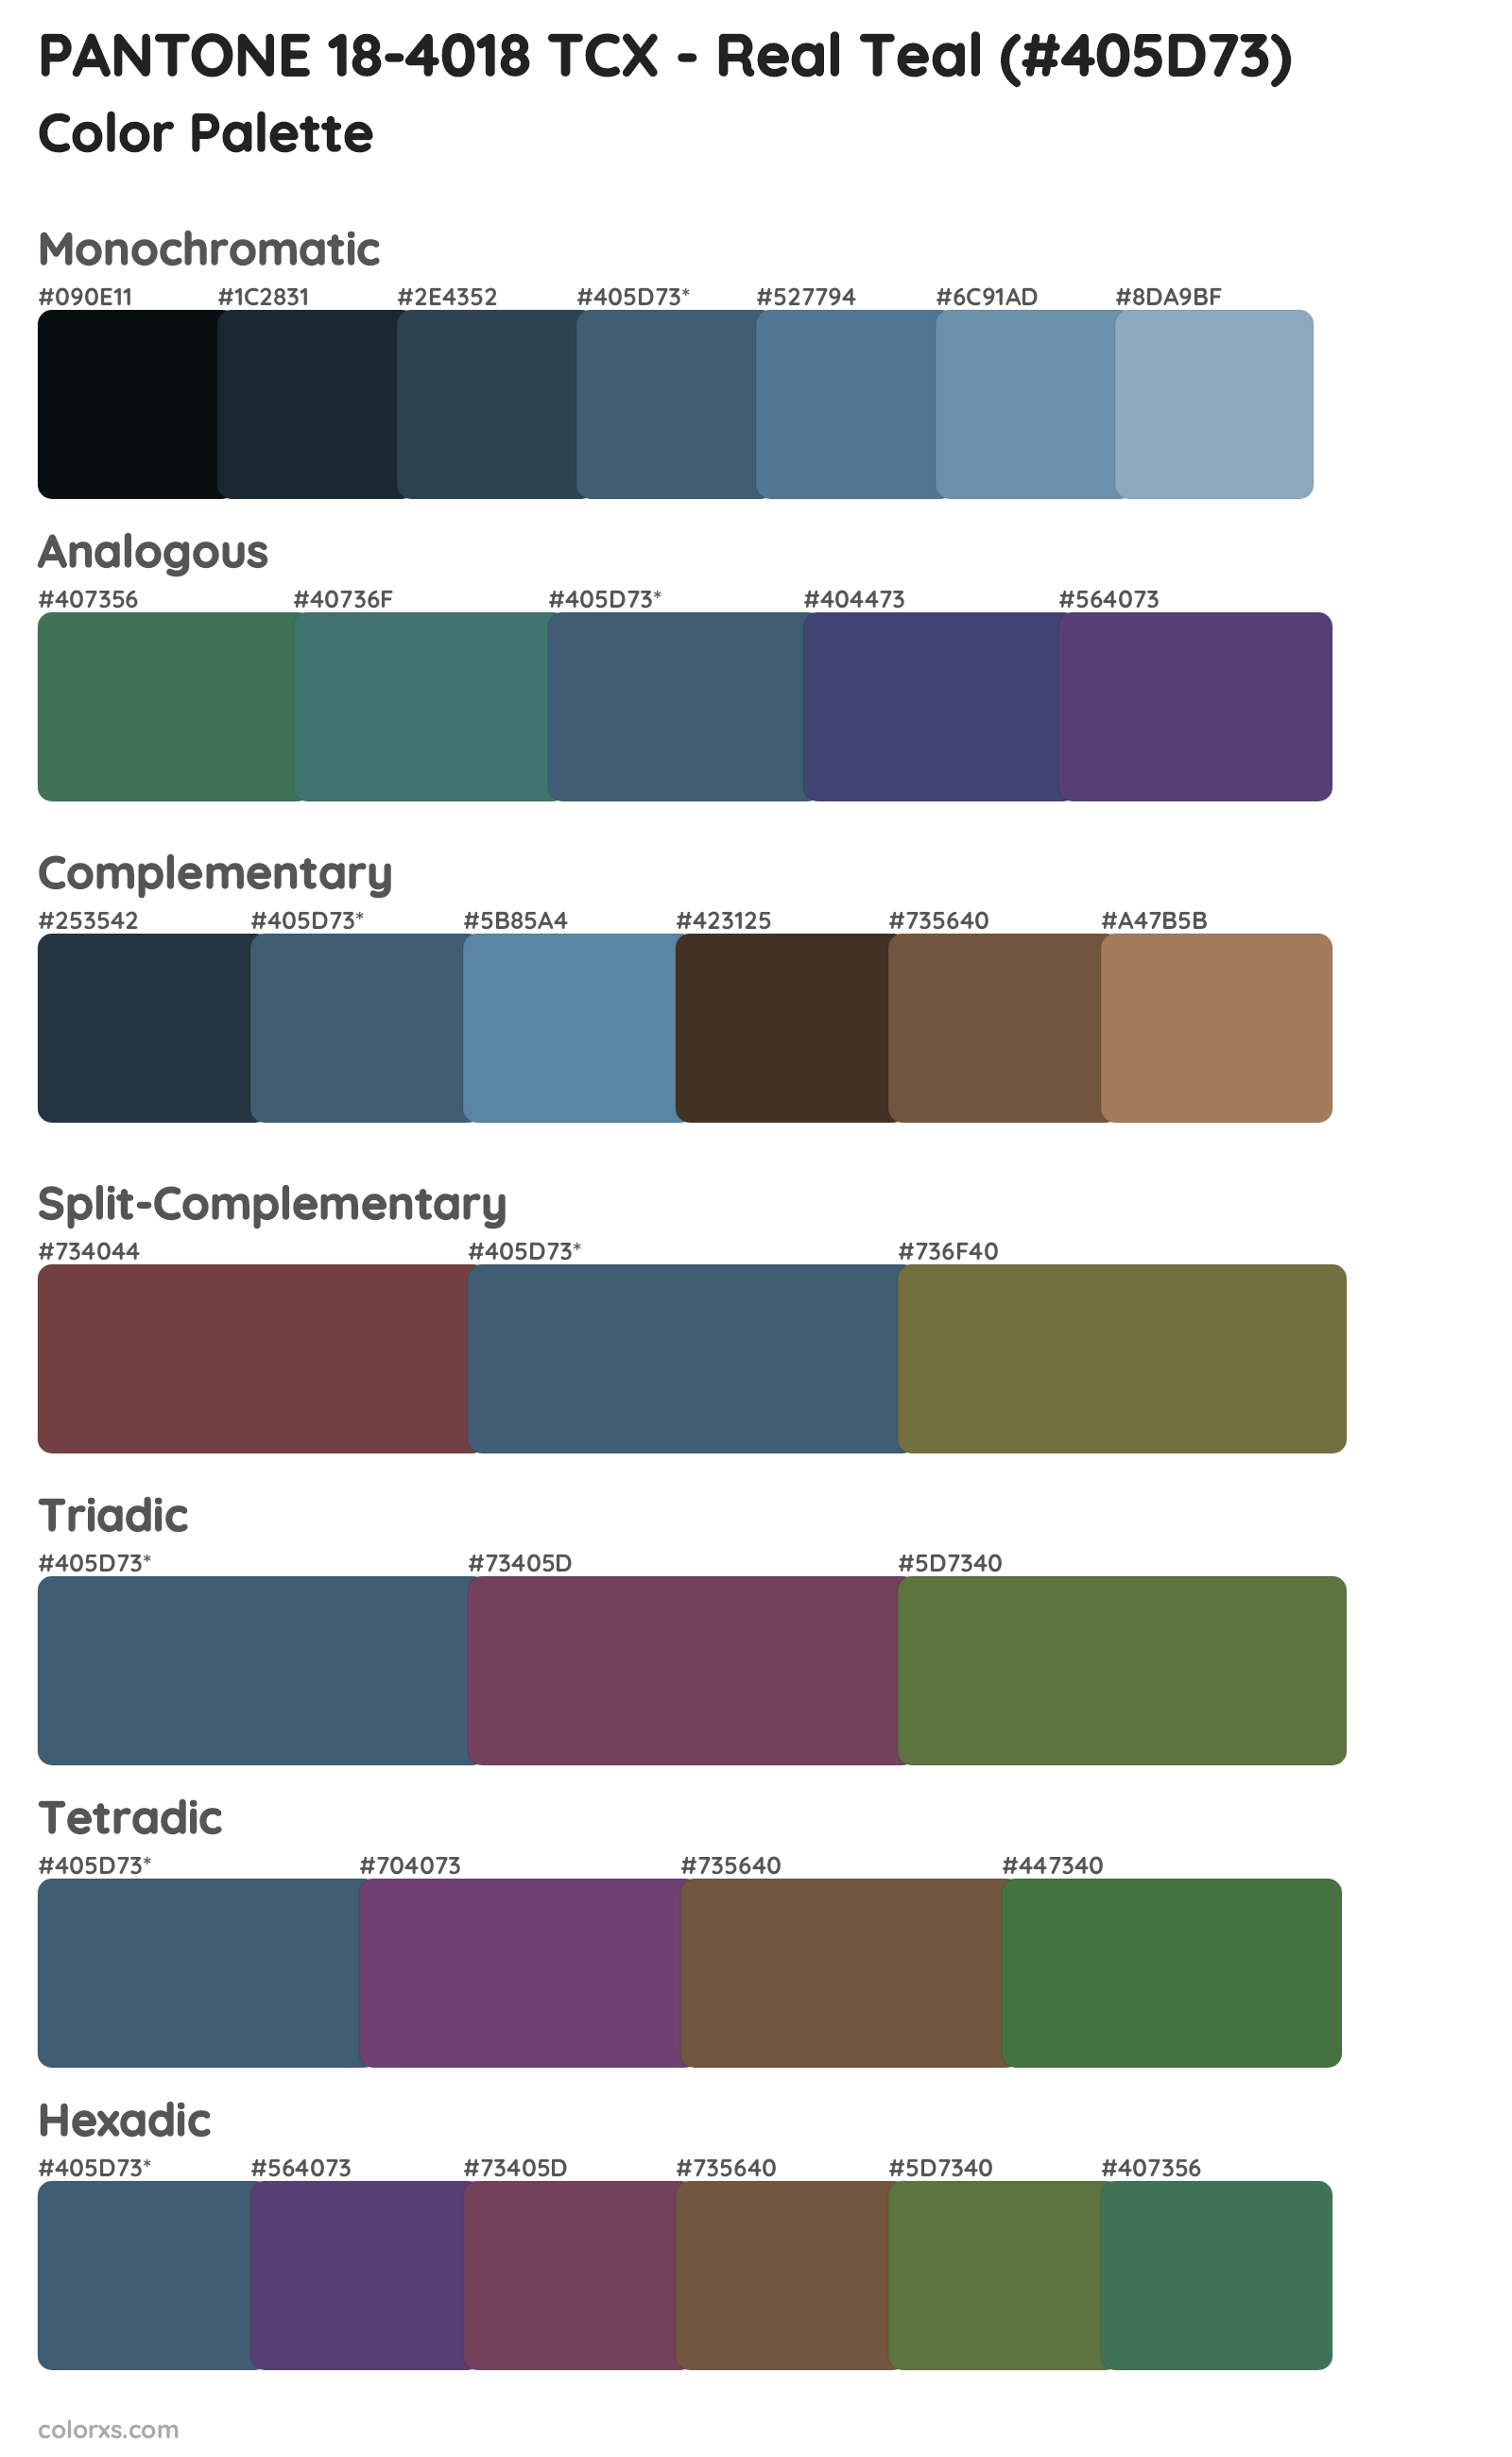 PANTONE 18-4018 TCX - Real Teal Color Scheme Palettes